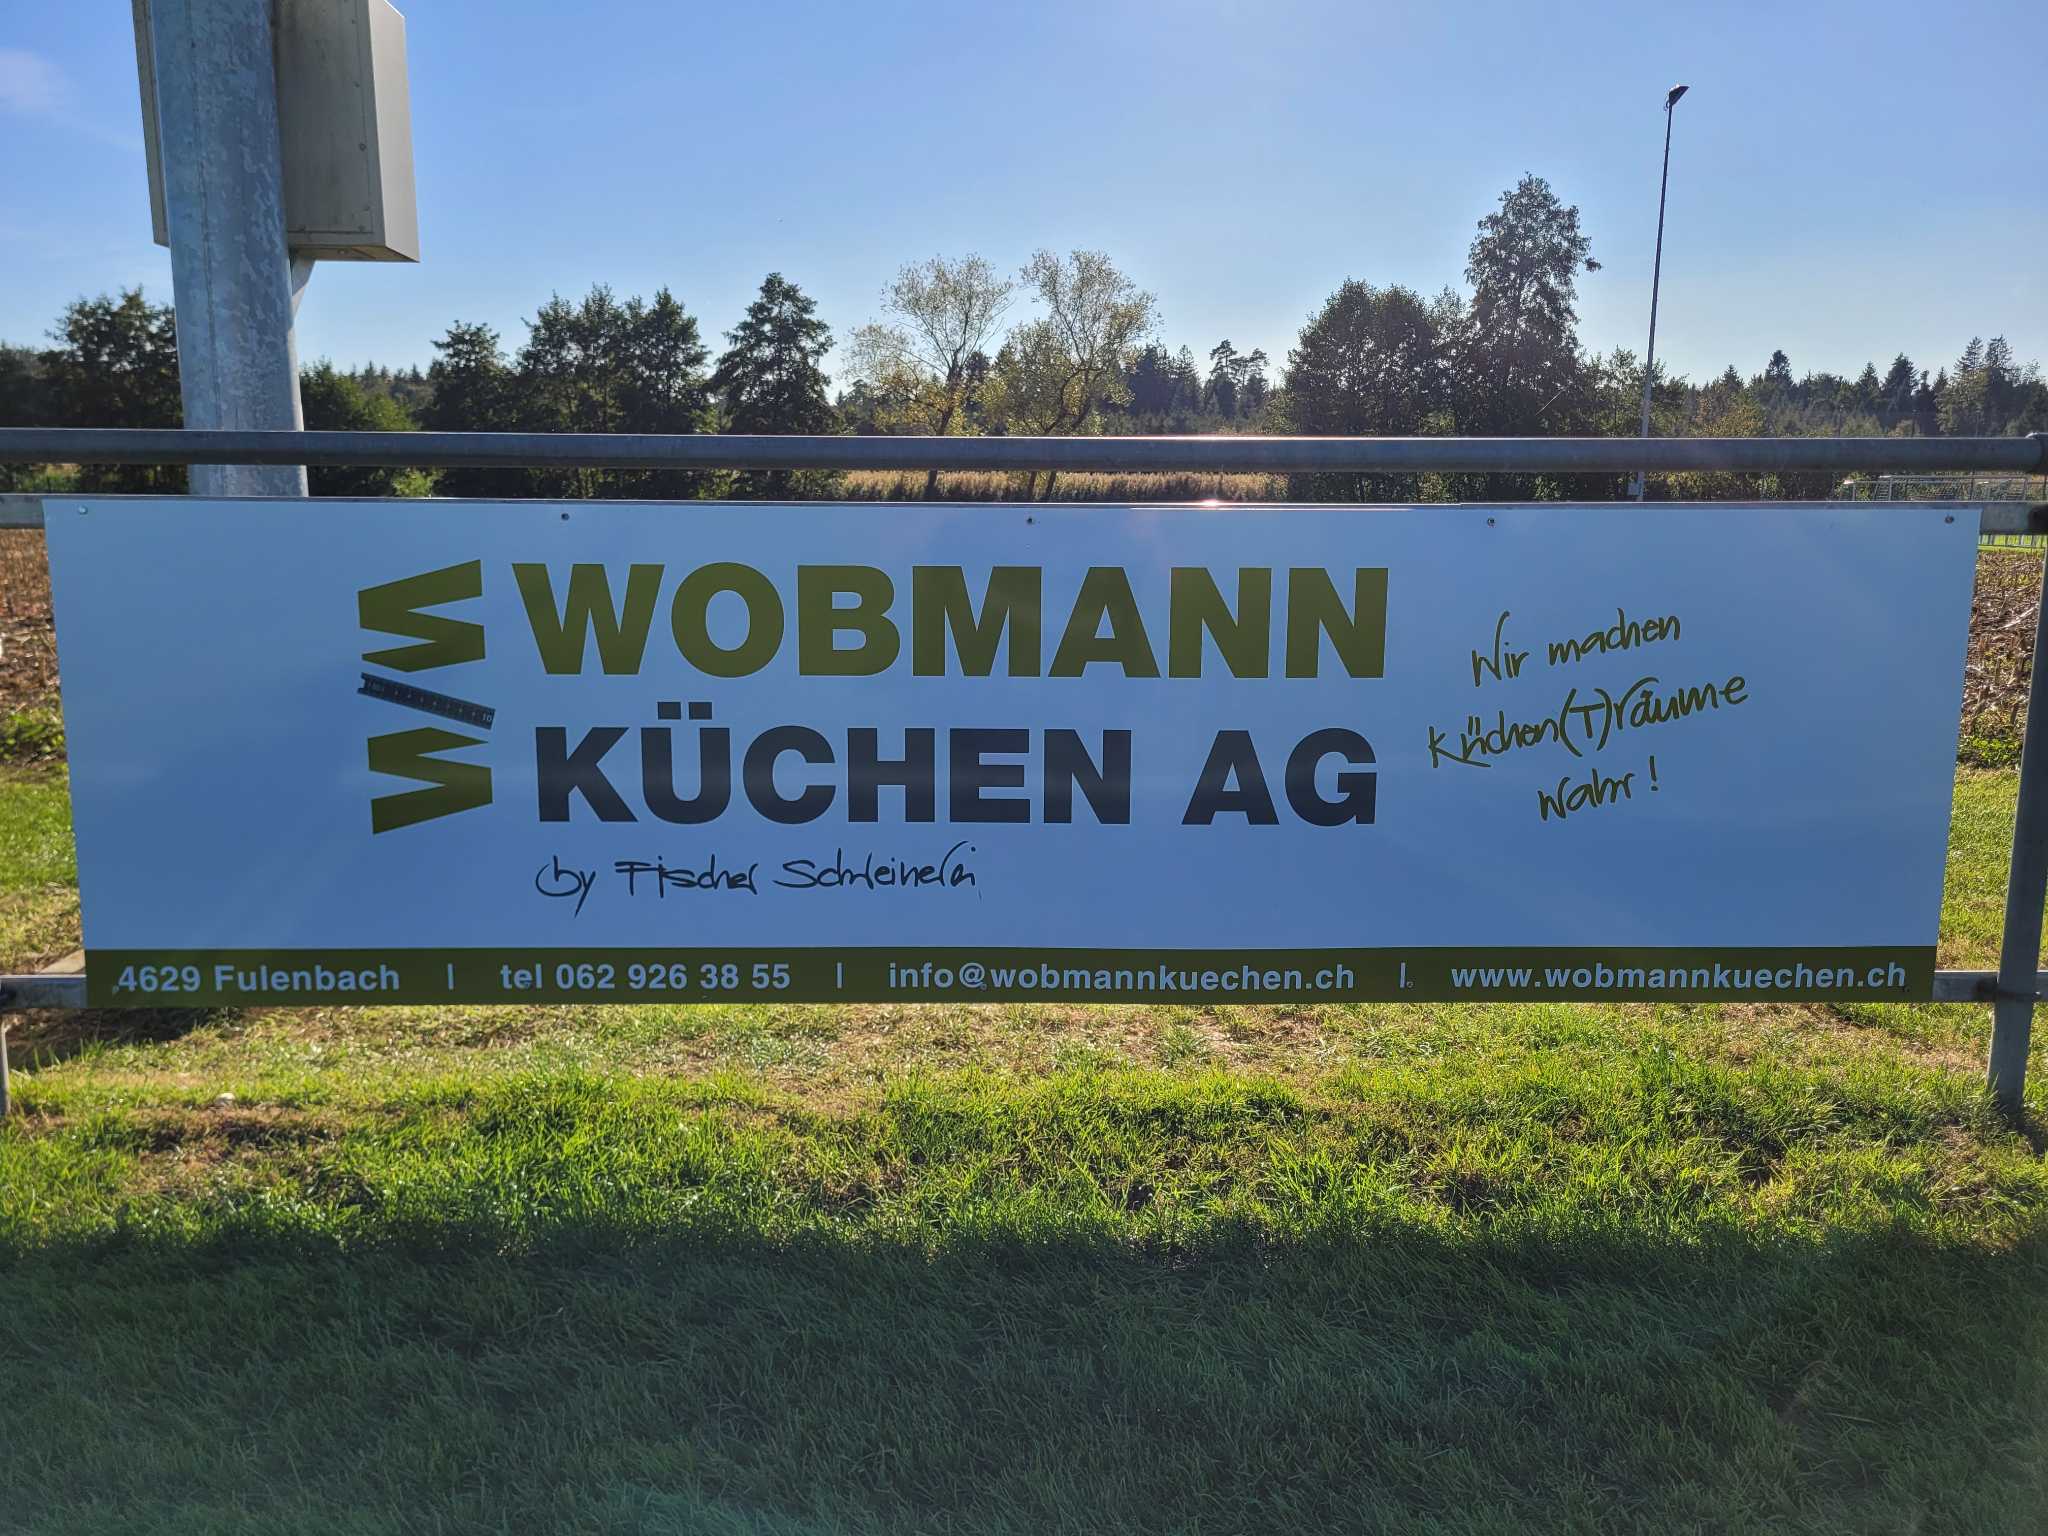 Wobmann Küchen AG